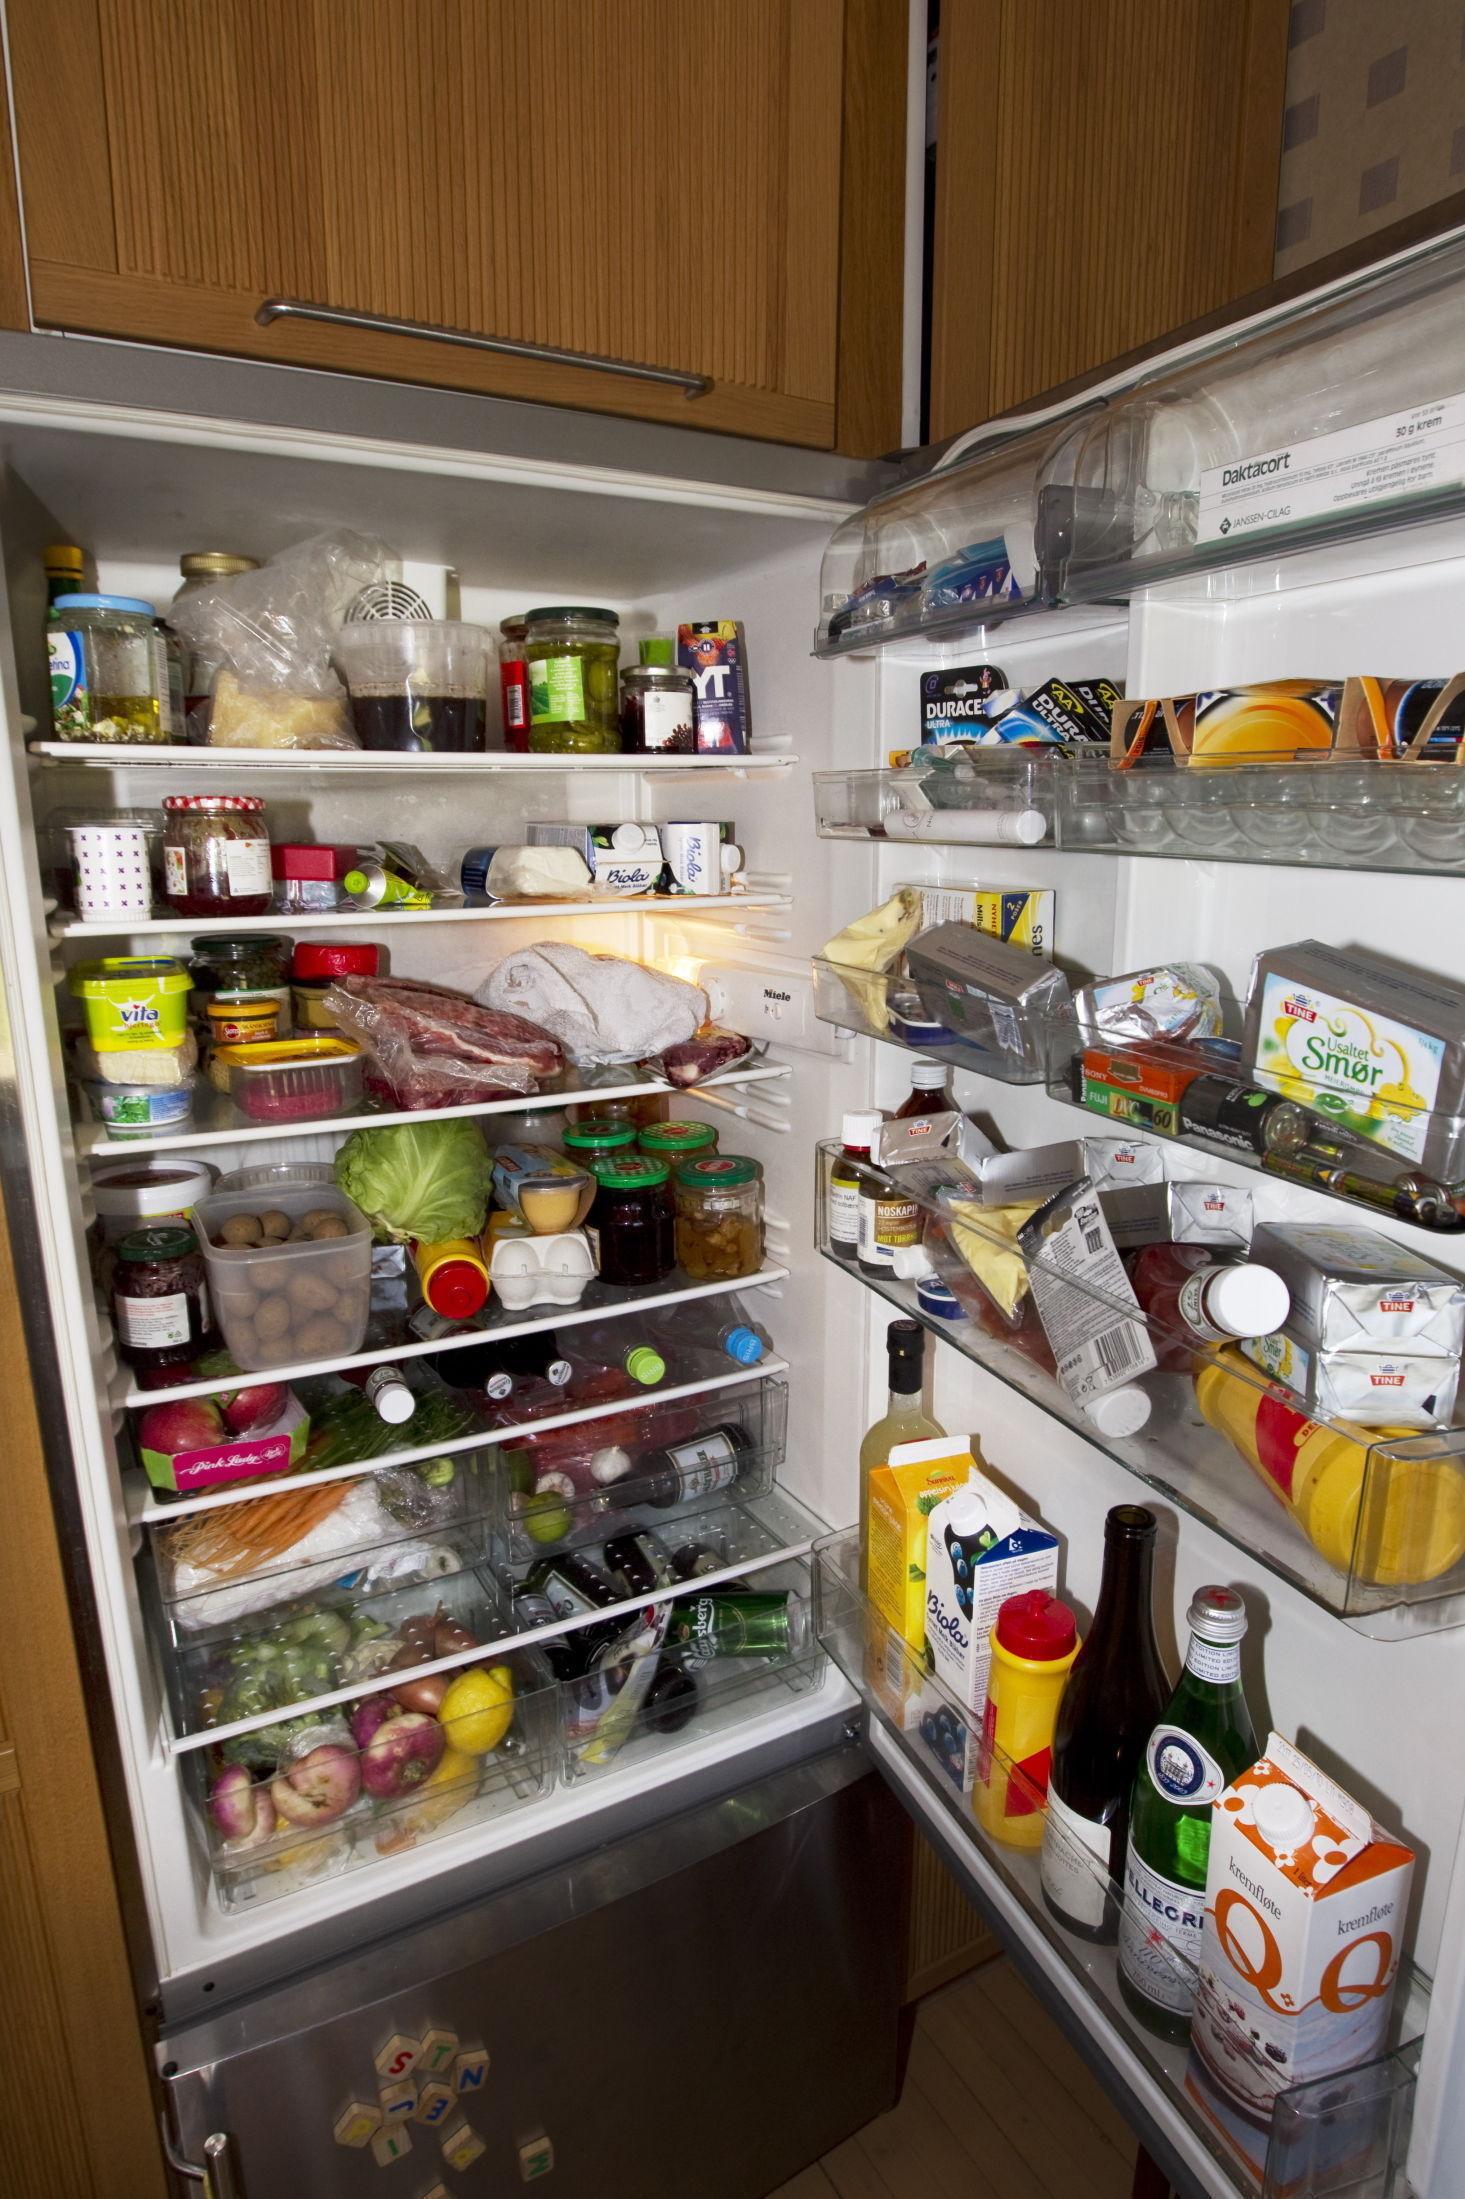 FULLT SKAP: Hvis det ikke er nok luft mellom matvarene vil temperaturen i kjøleskapet stige. Foto: FRODE HANSEN/VG